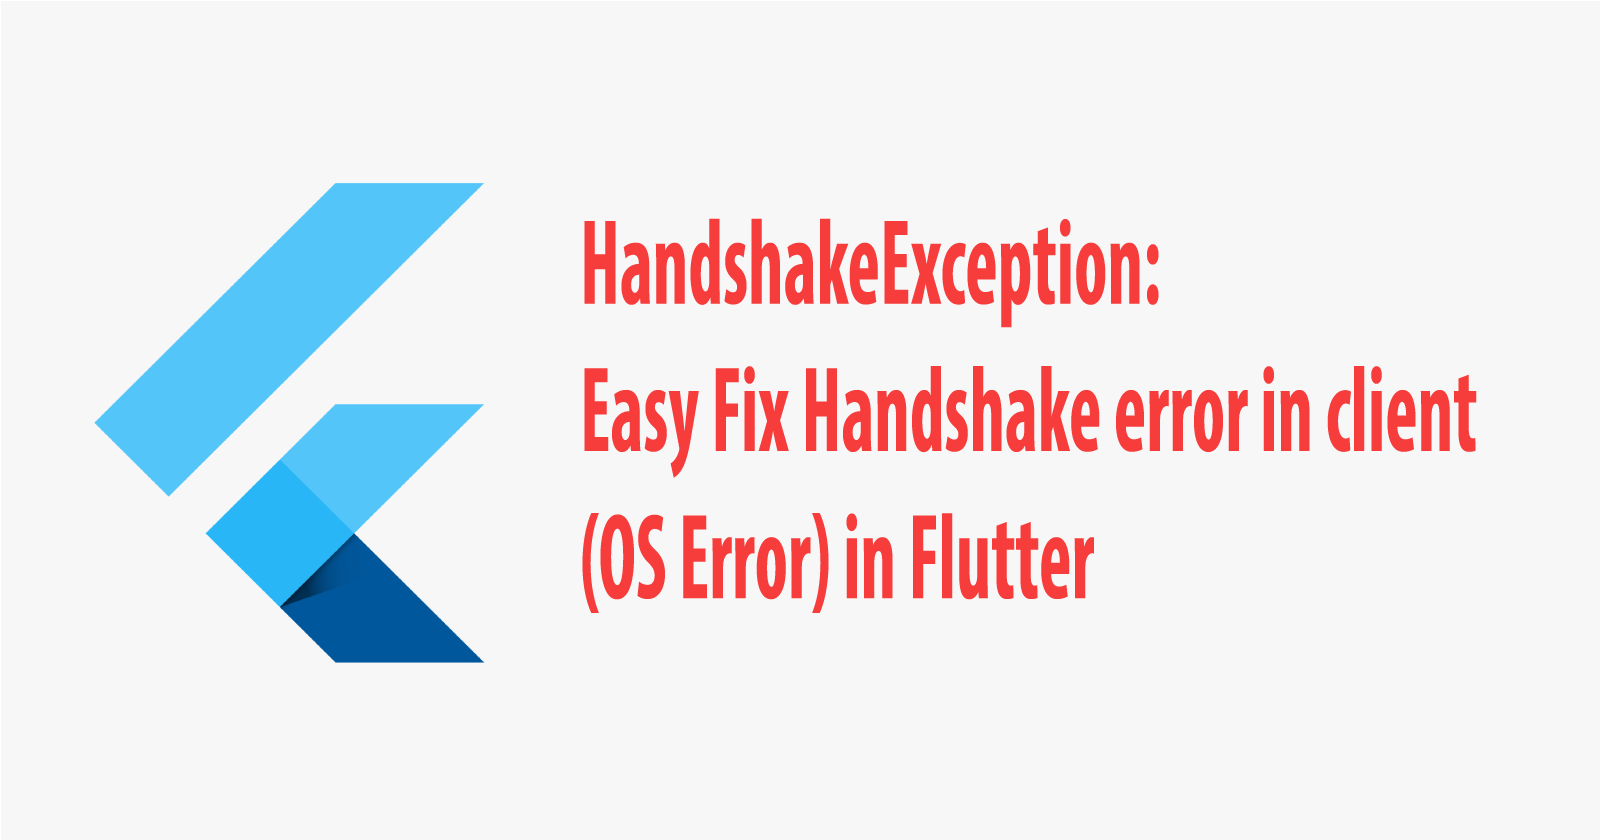 Handshake exception: Handshake error in client(OS Error : CERTIFICATE_VERIFY_FAILED) fix this error in flutter.